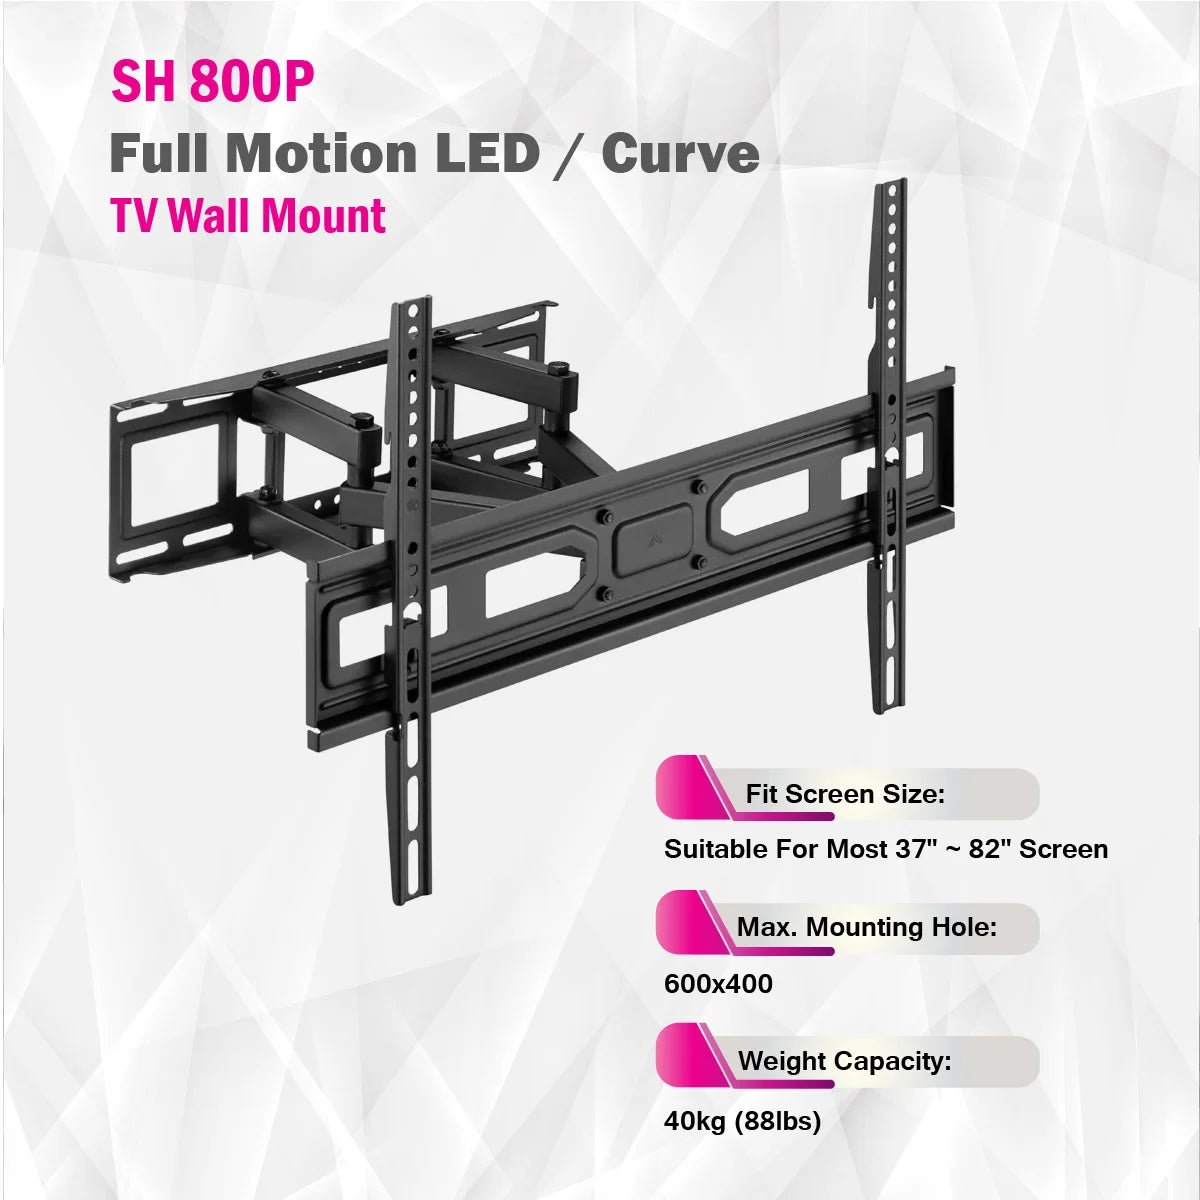 Skill Tech SH 800P - Full Motion LED / Curve TV Wall Mount